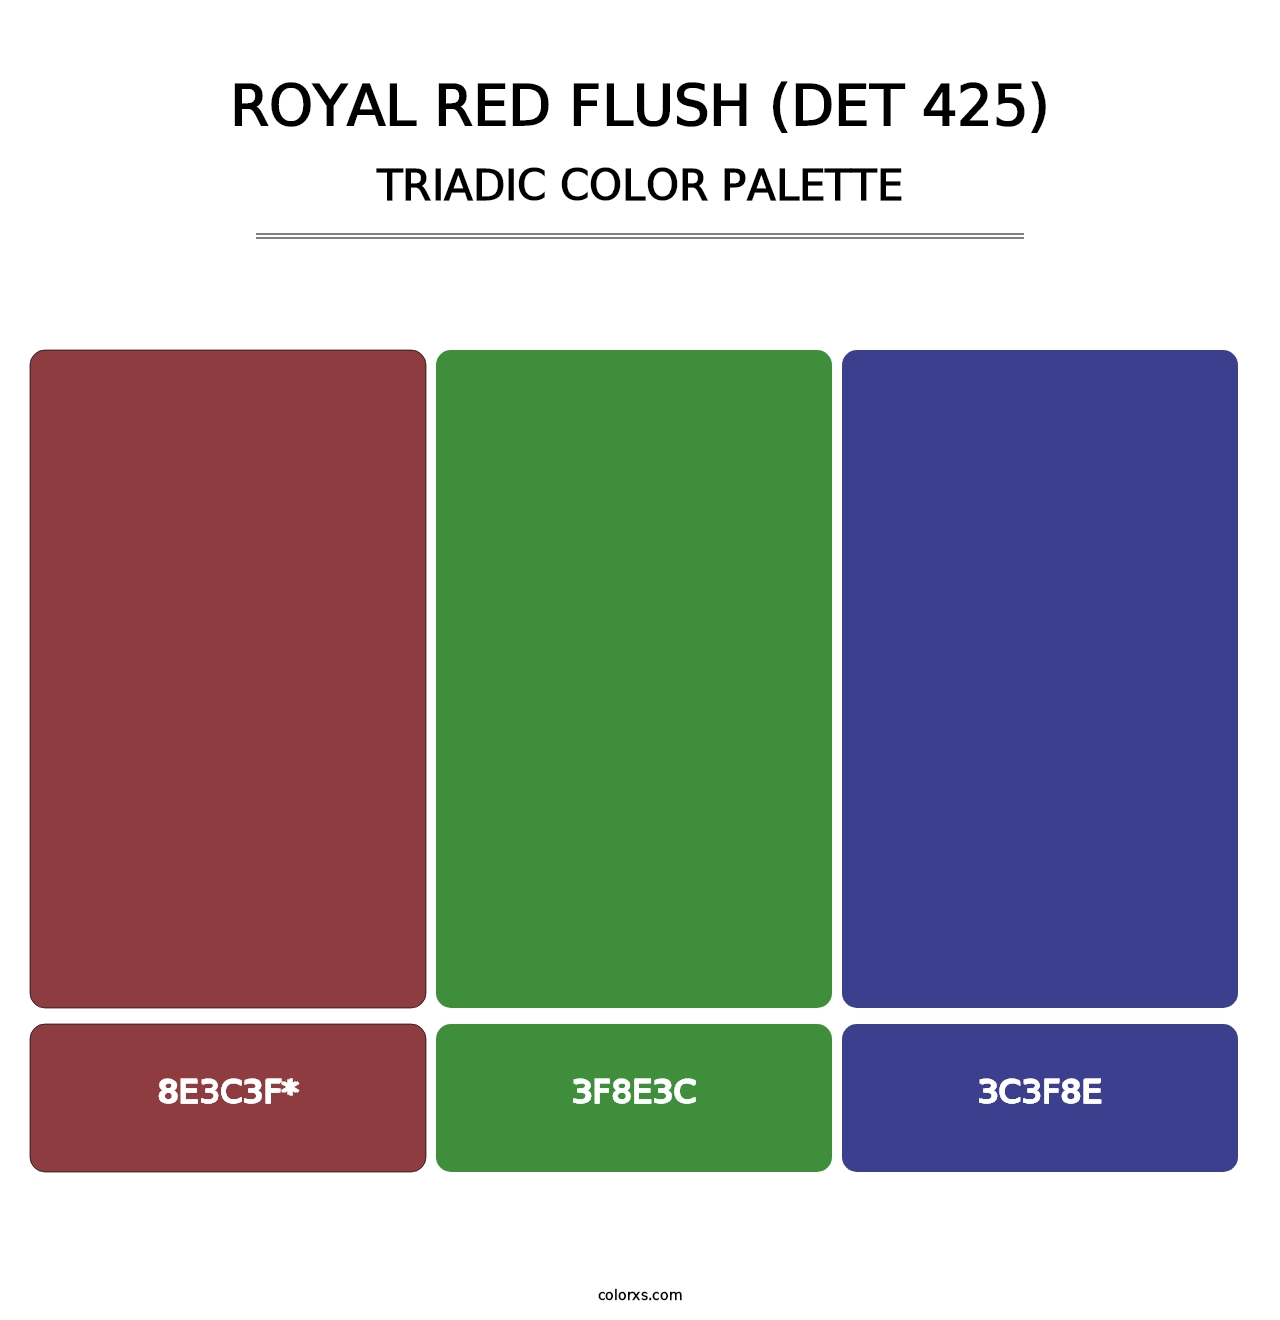 Royal Red Flush (DET 425) - Triadic Color Palette